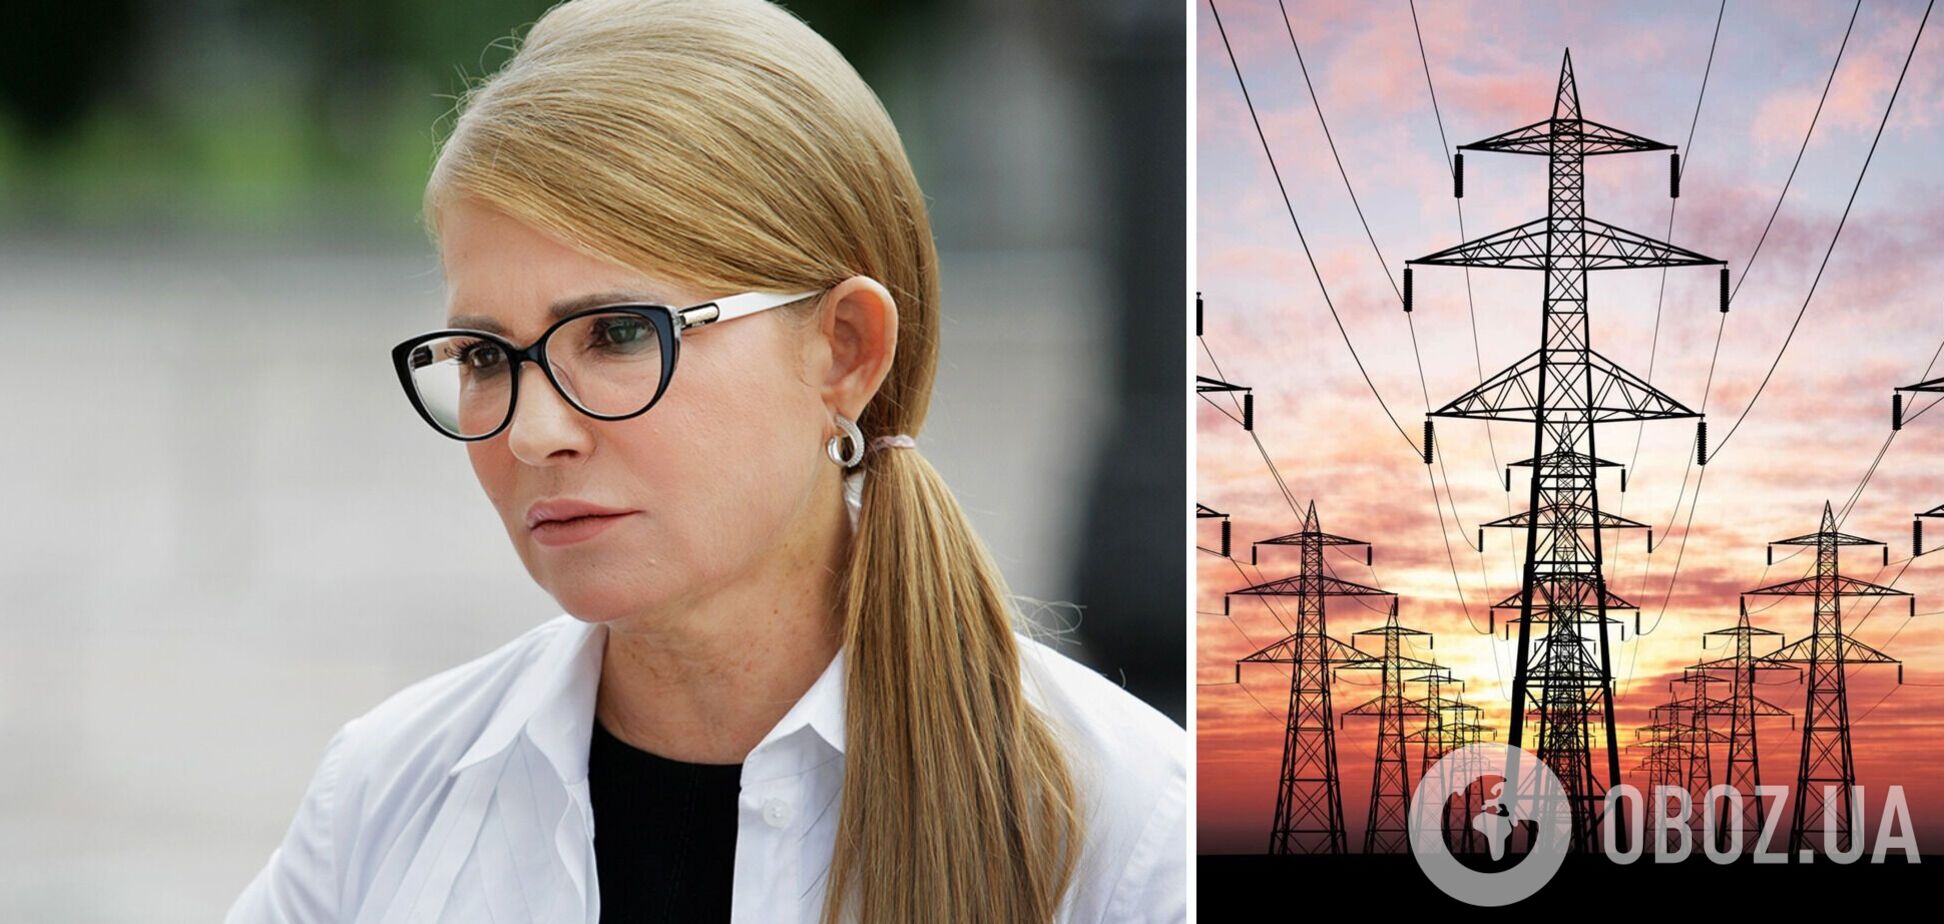 Властям следует прислушаться к предложениям Тимошенко, – эксперт